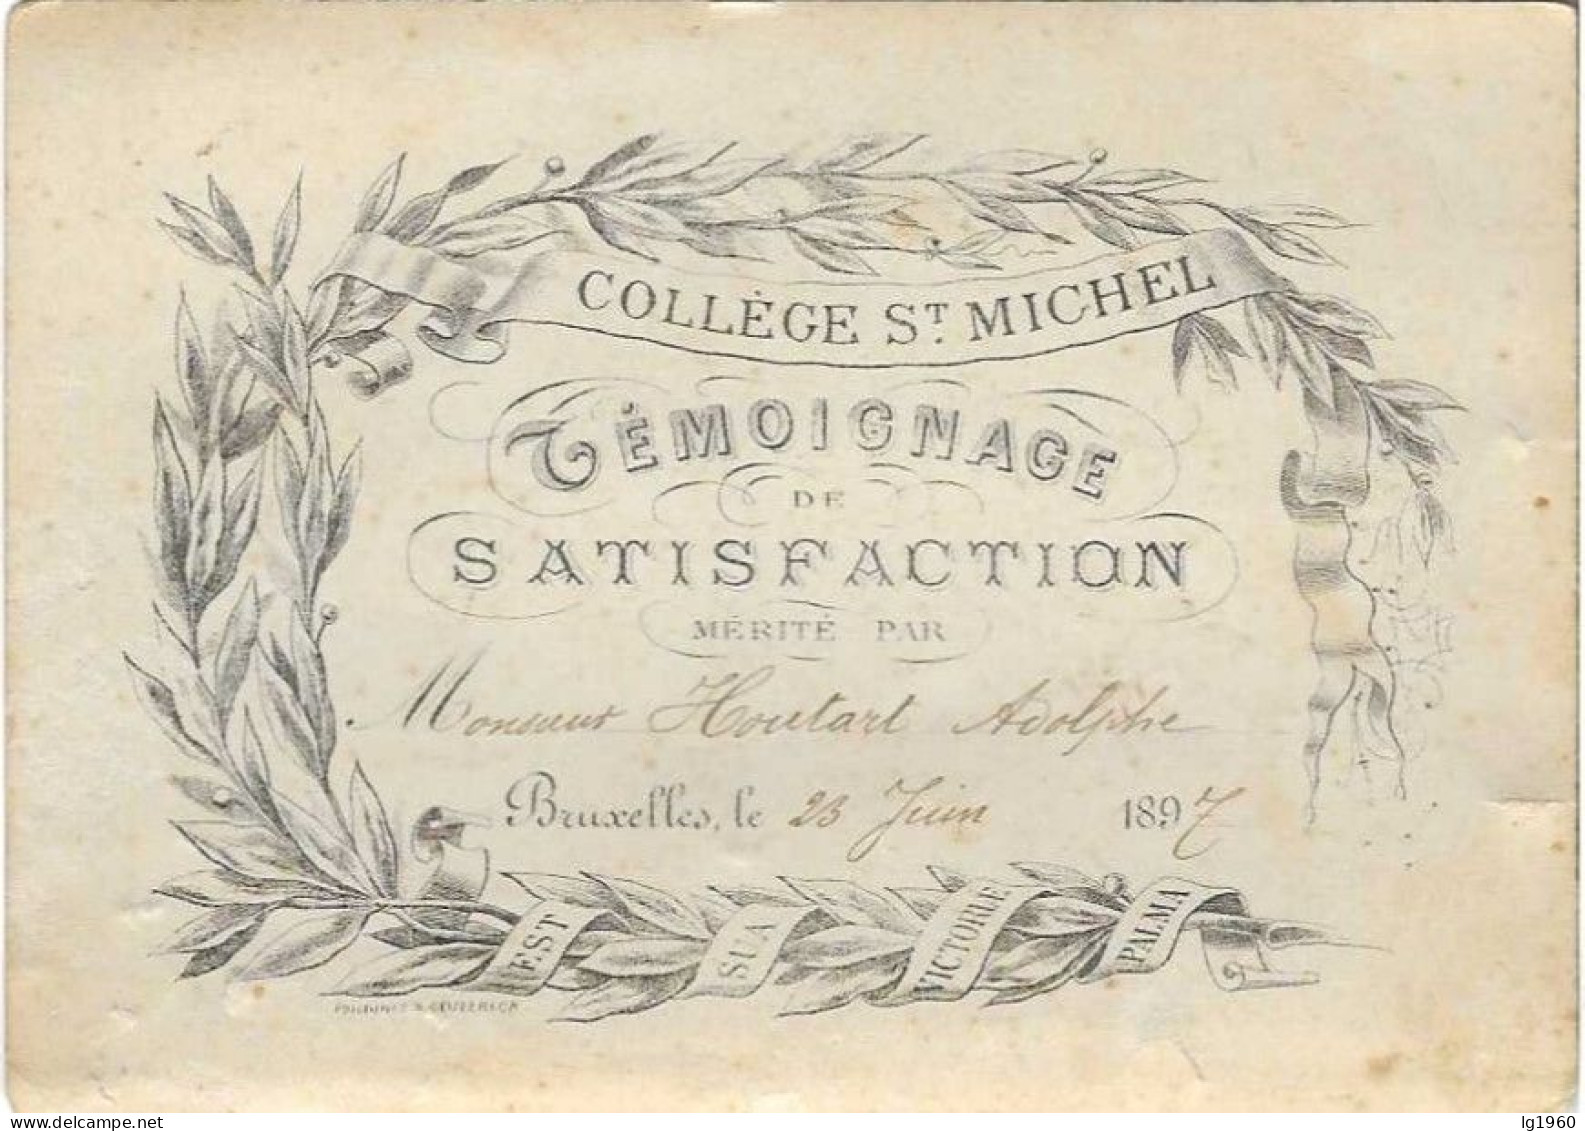 RD - College Saint-Michel - Témoignage De Satisfaction - 1897 - Etterbeek